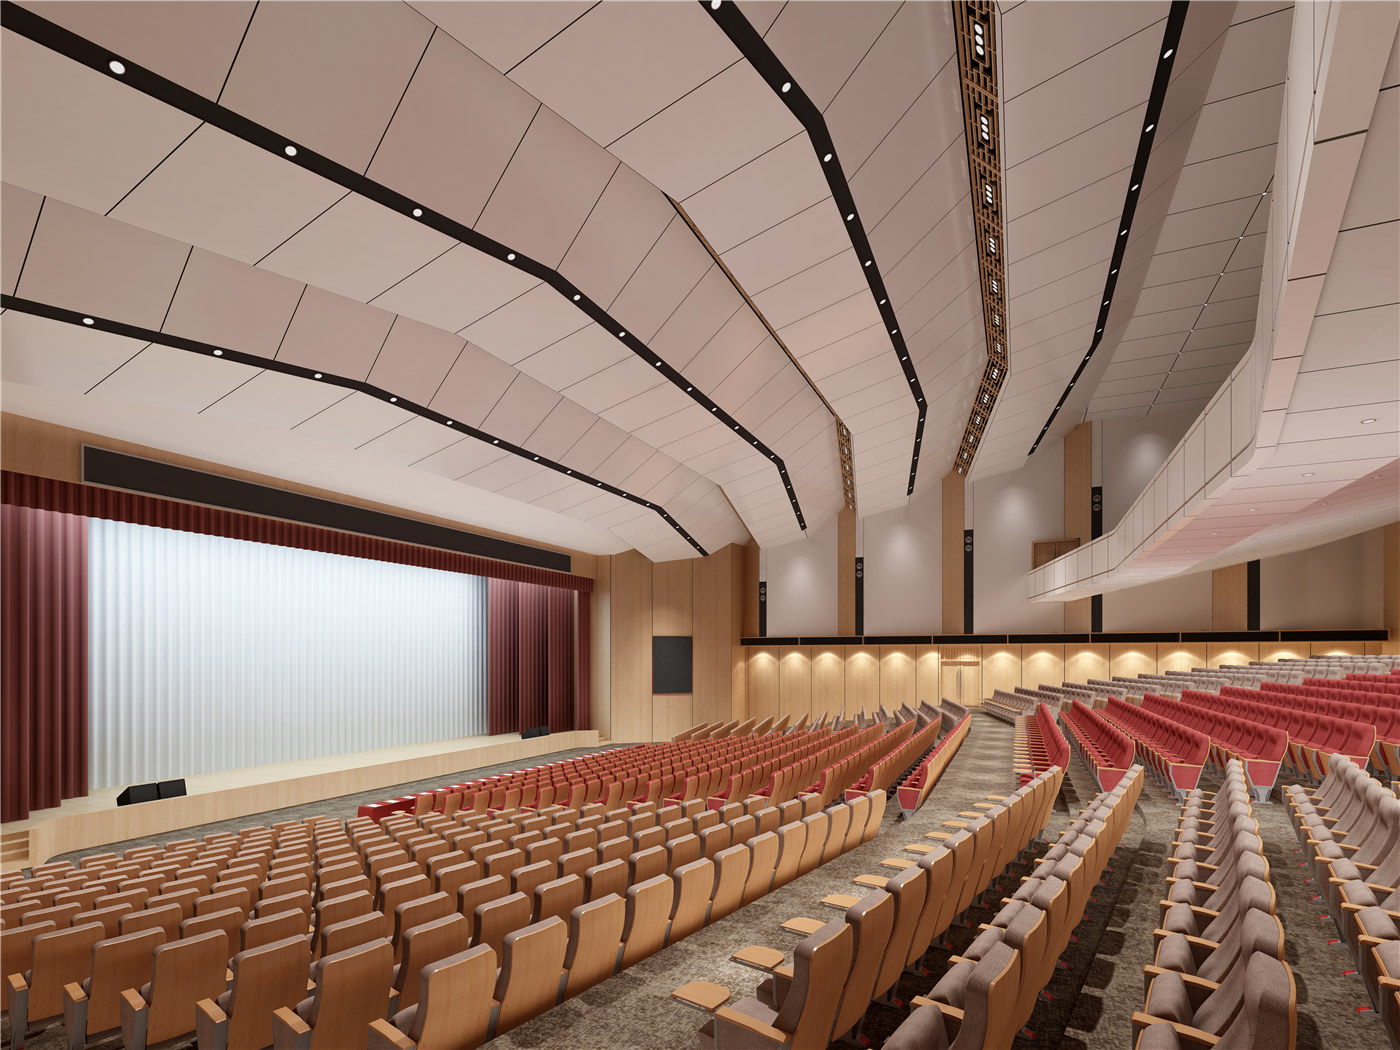 Forbedre estetikken til lokalet ditt med tilpassbare auditorium fra anerkjente produsenter02